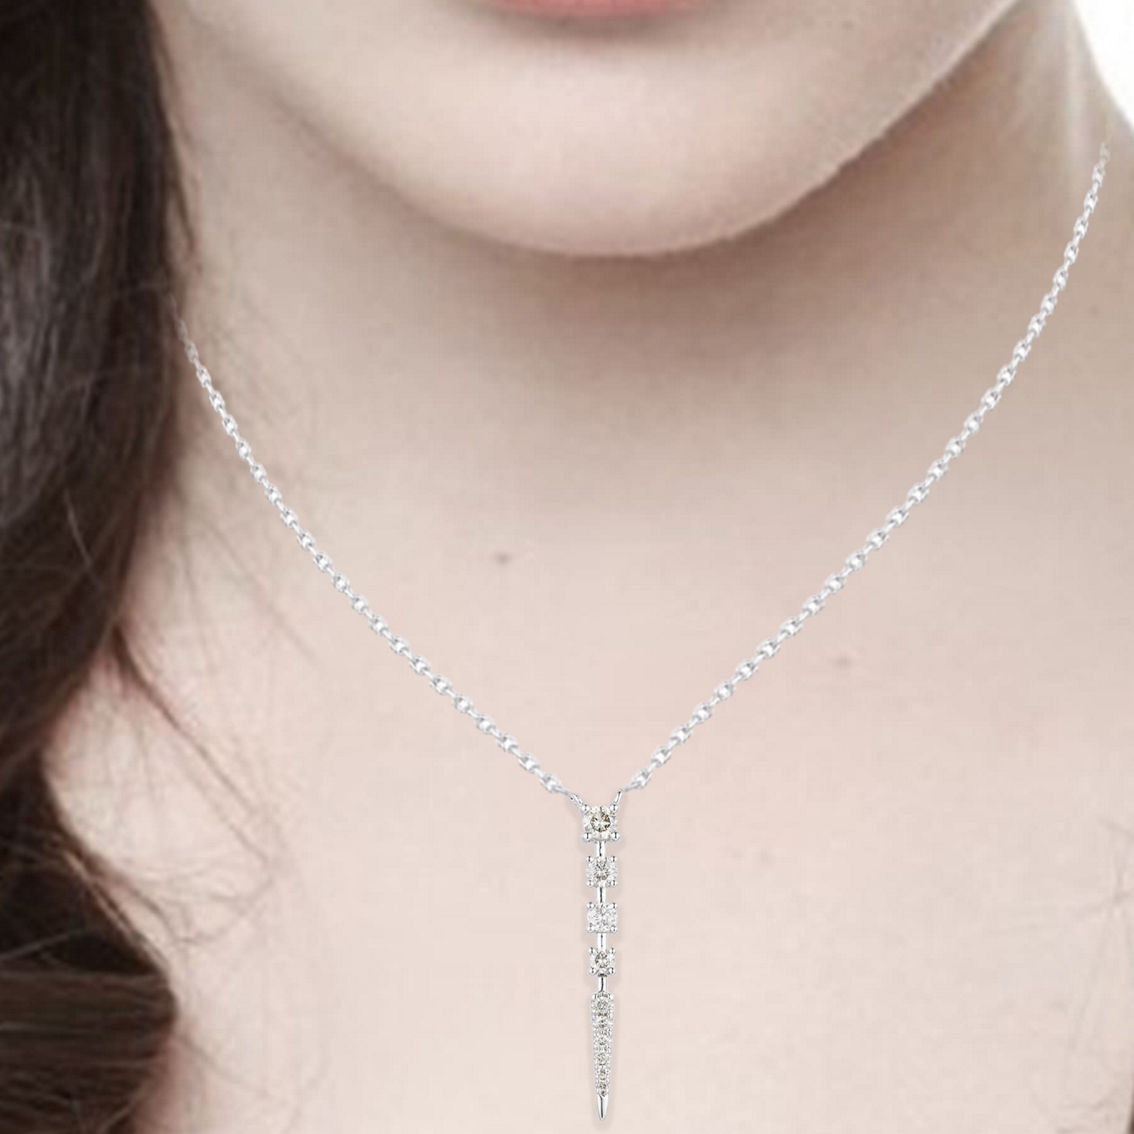 KGK 14K White Gold 0.26cttw Round Diamond  fashion Pendant - Image 3 of 3